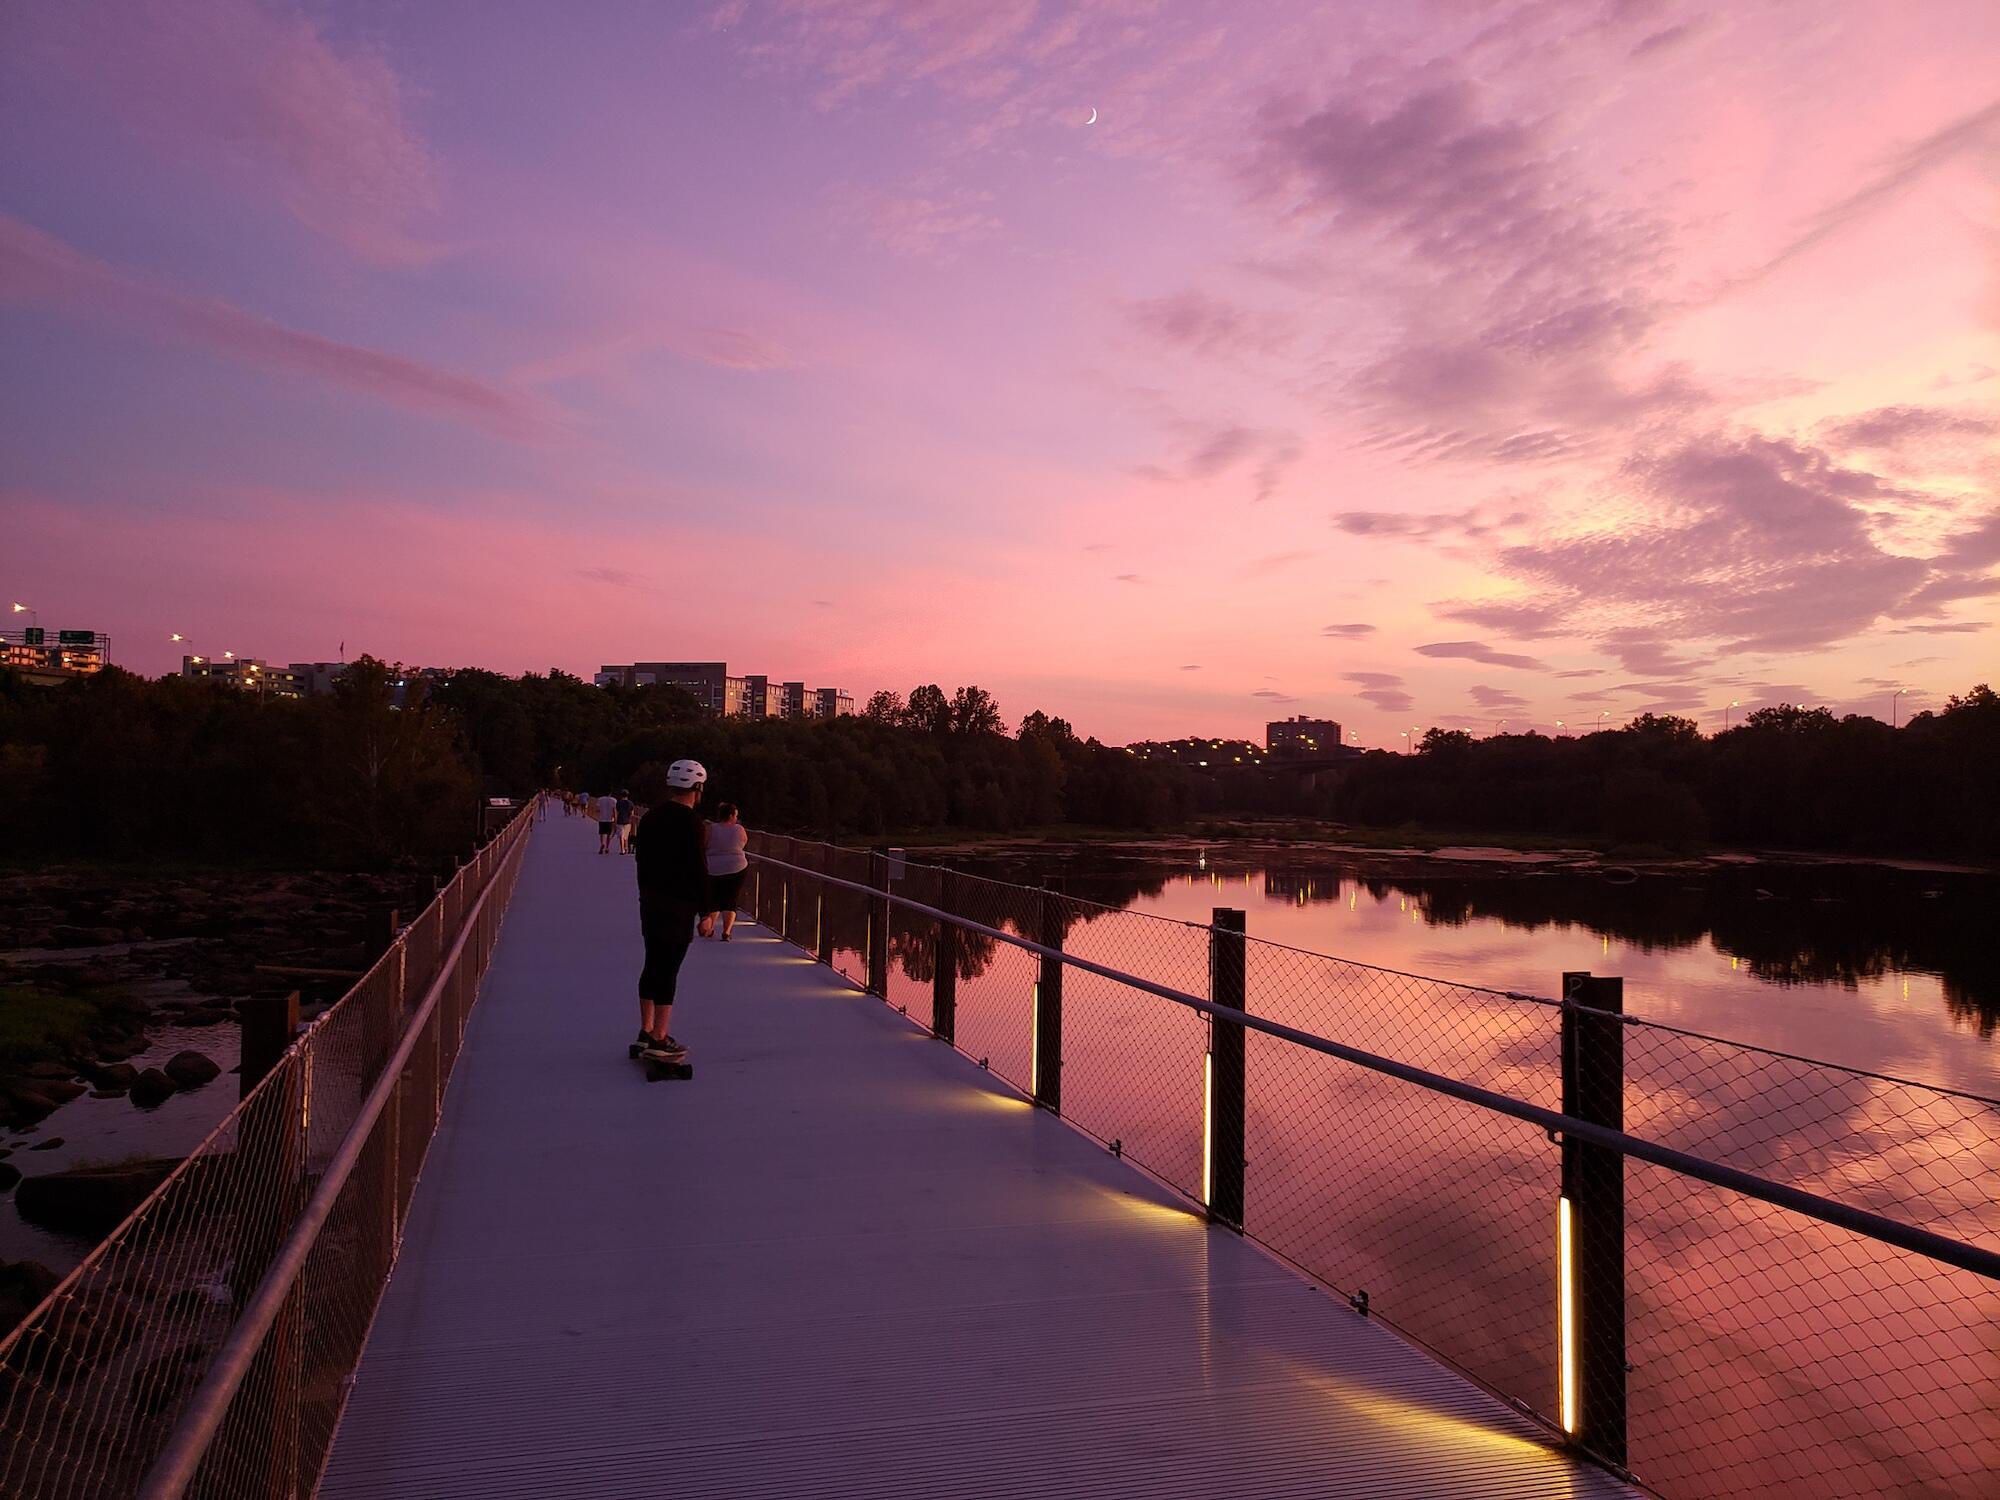 sunset on a pedestrian bridge over a river